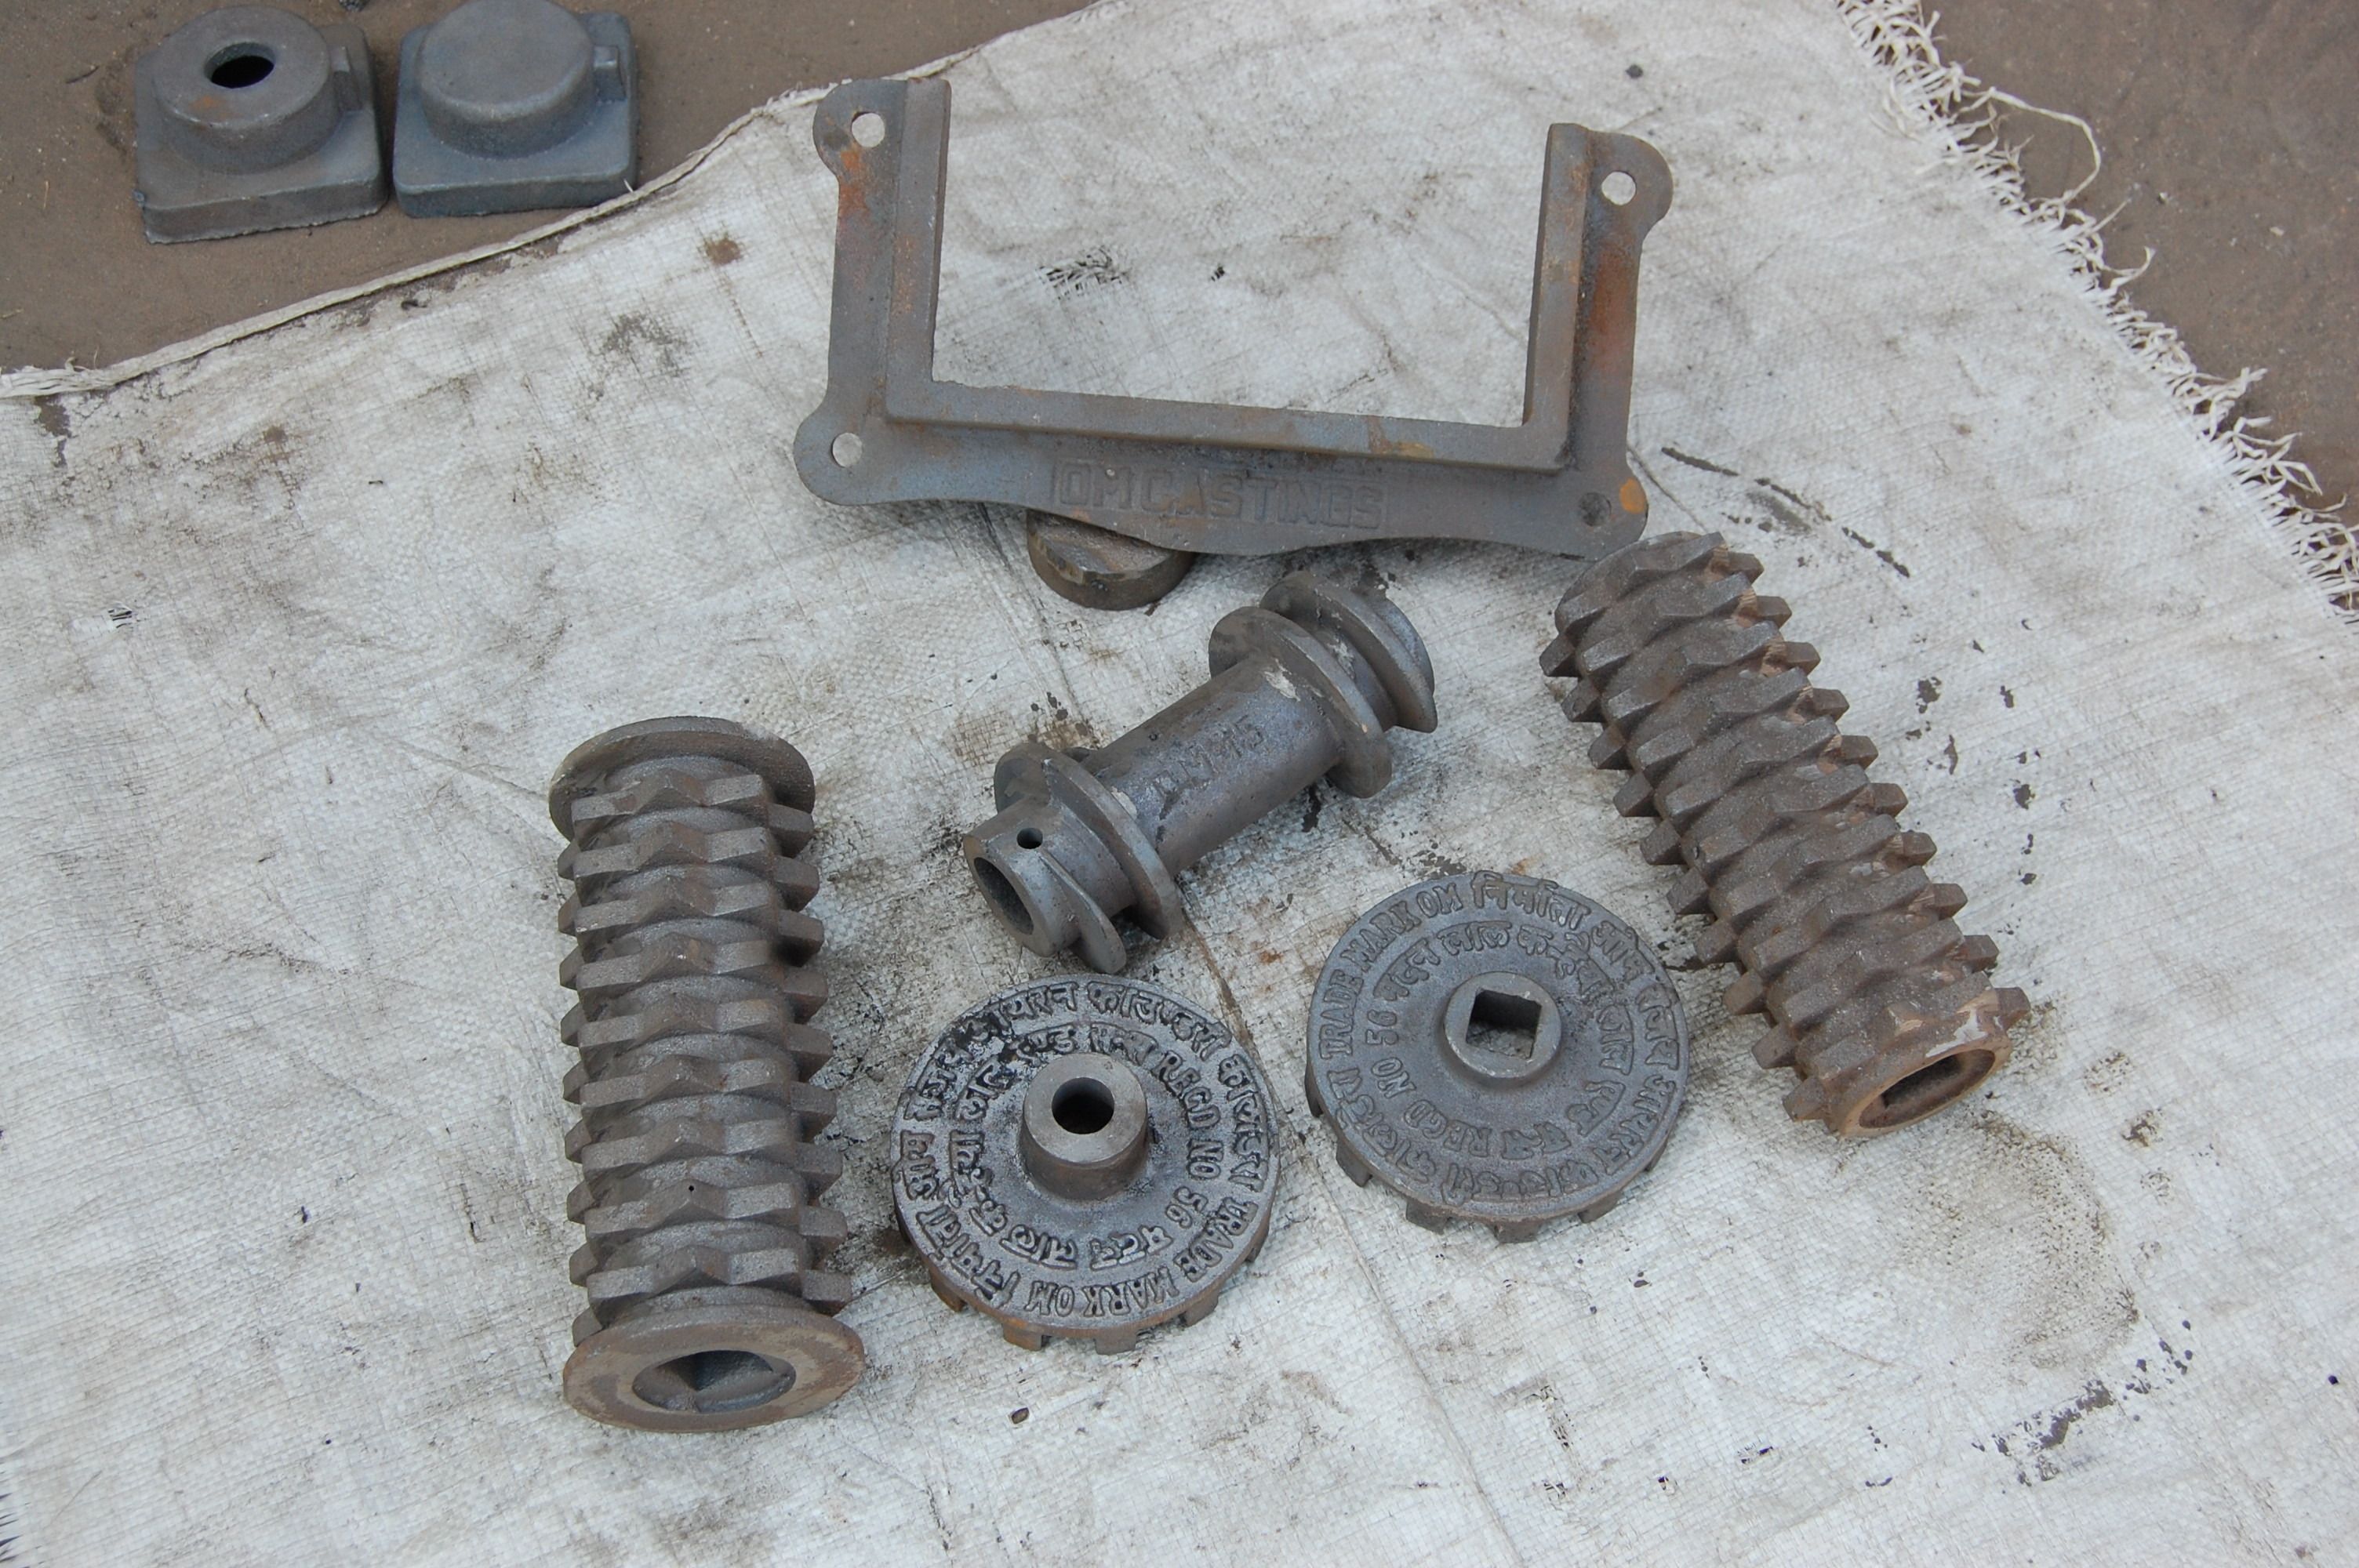 chaff cutter machine parts